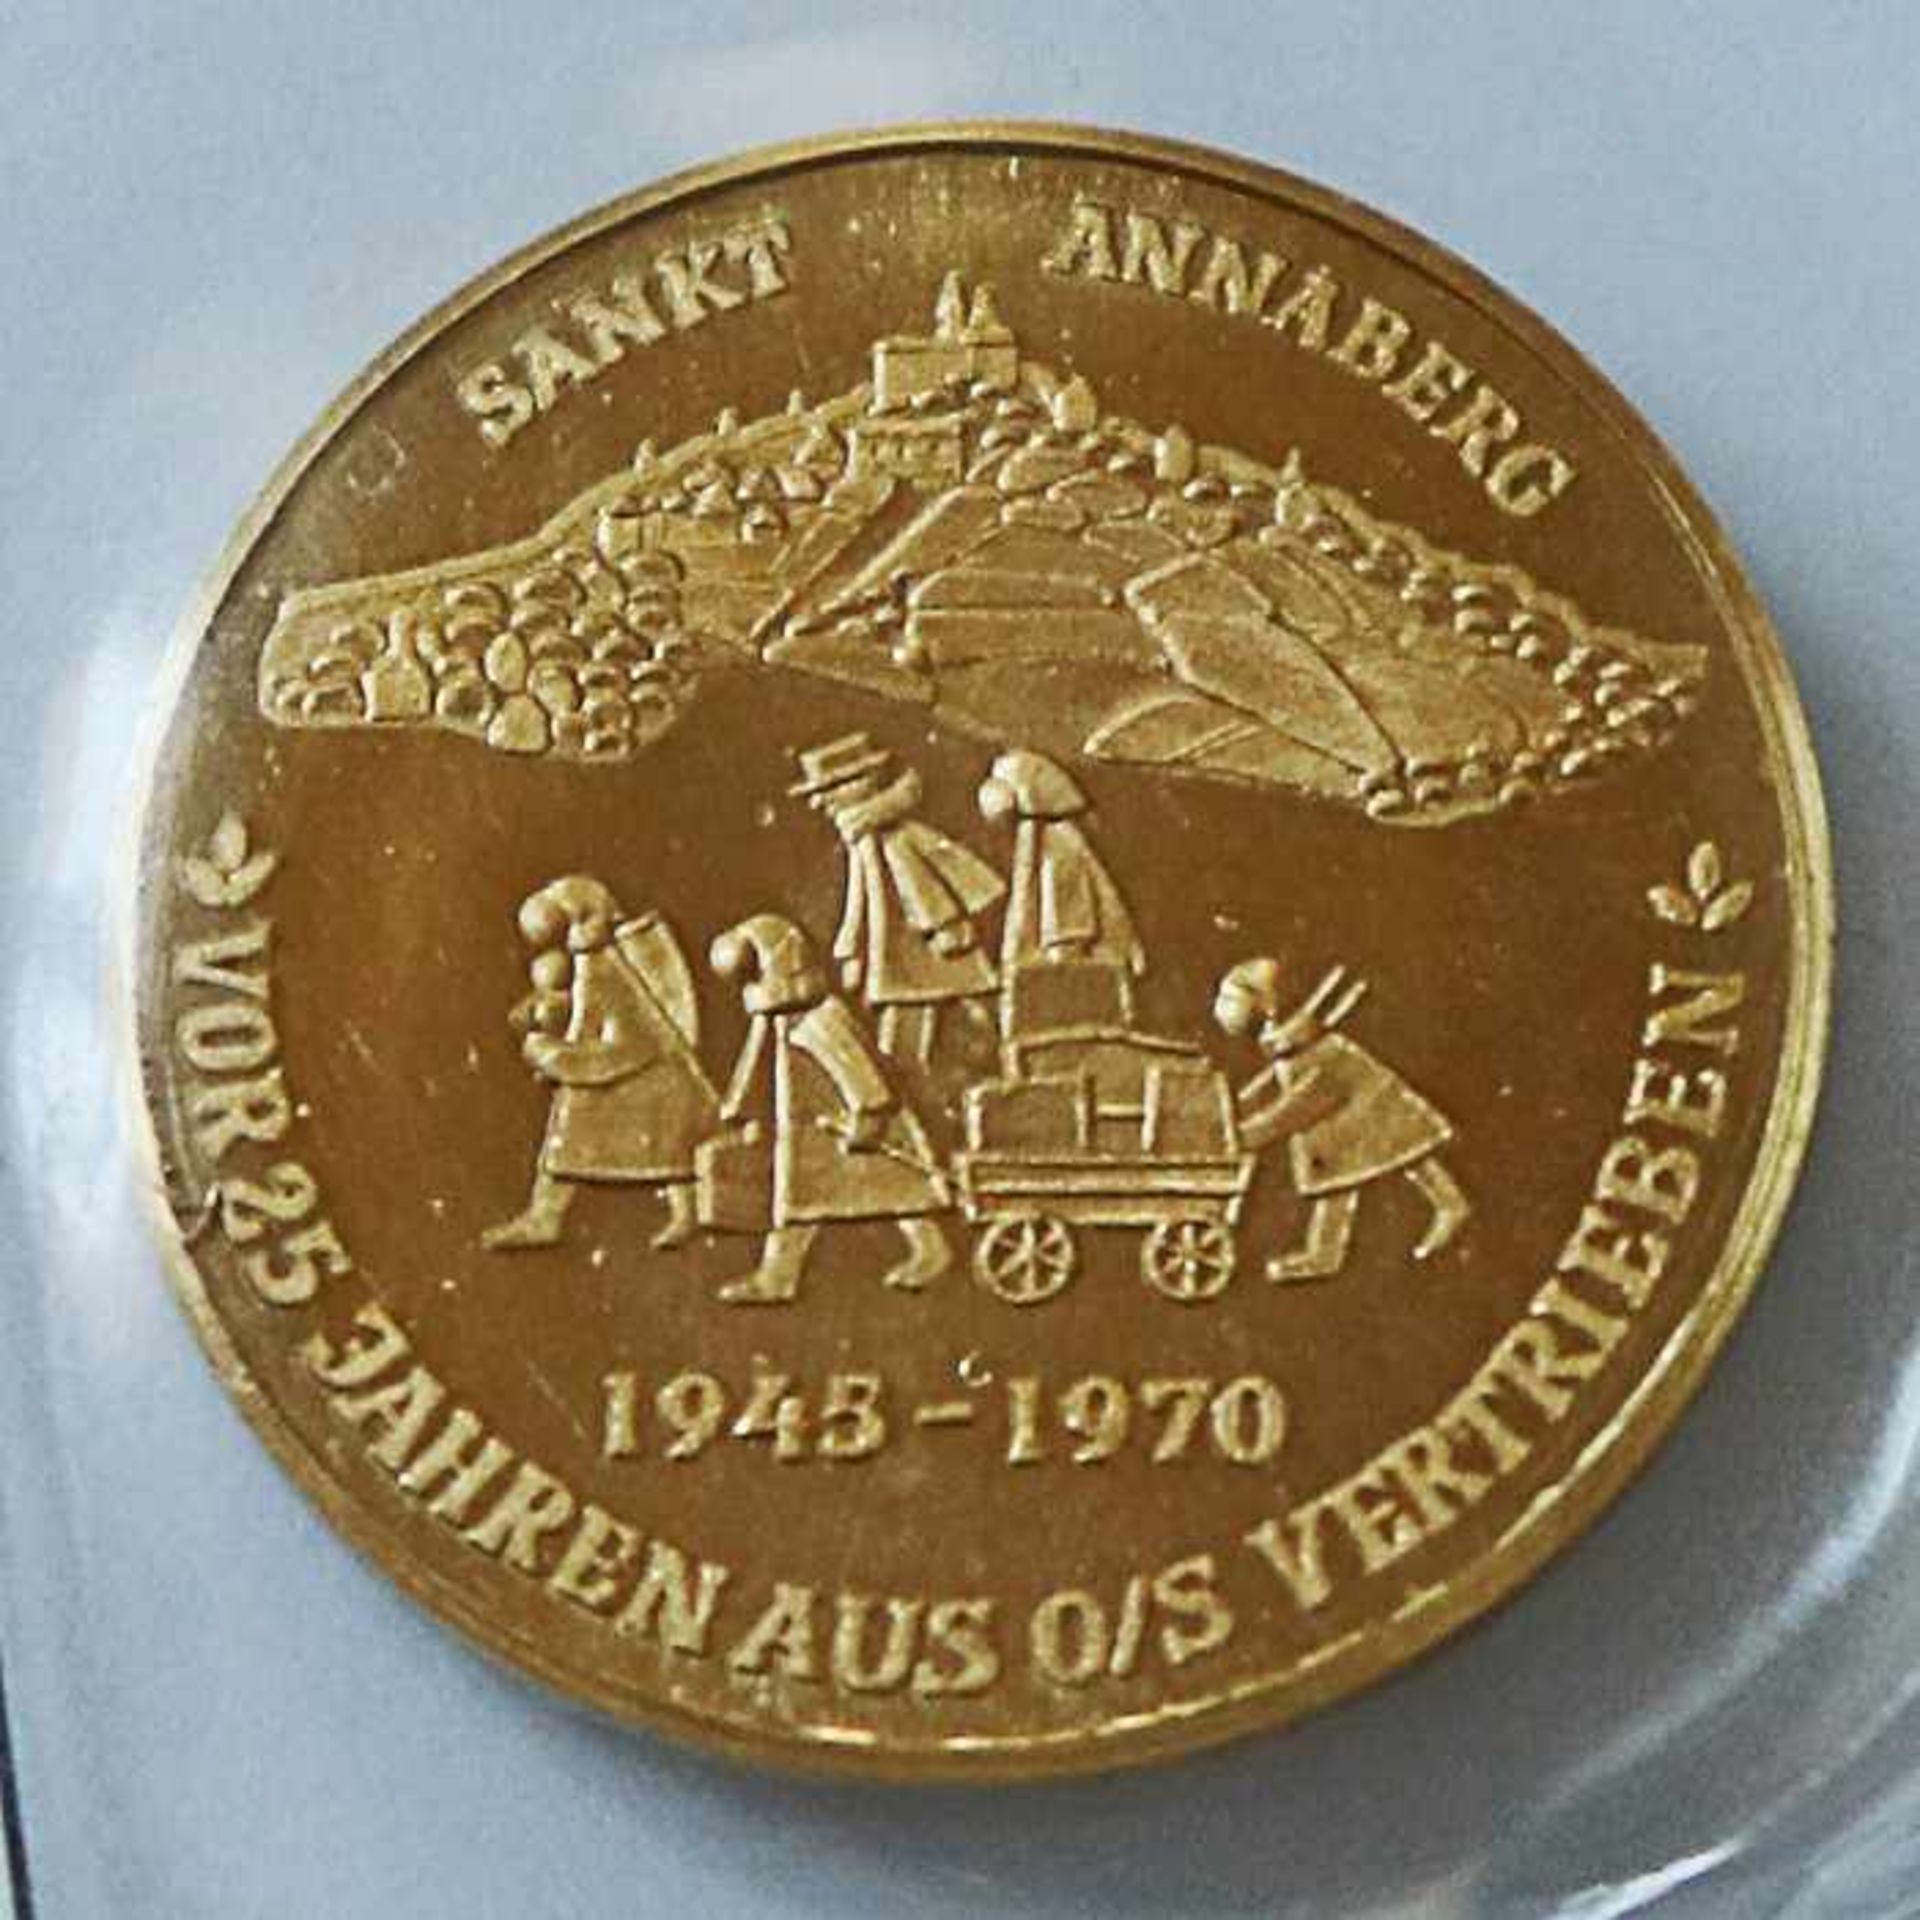 Gold - Medaille Polen 1970gest. 986, Sankt Annaberg - vor 25 Jahren aus O/S vertrieben, D 20mm, - Image 3 of 4